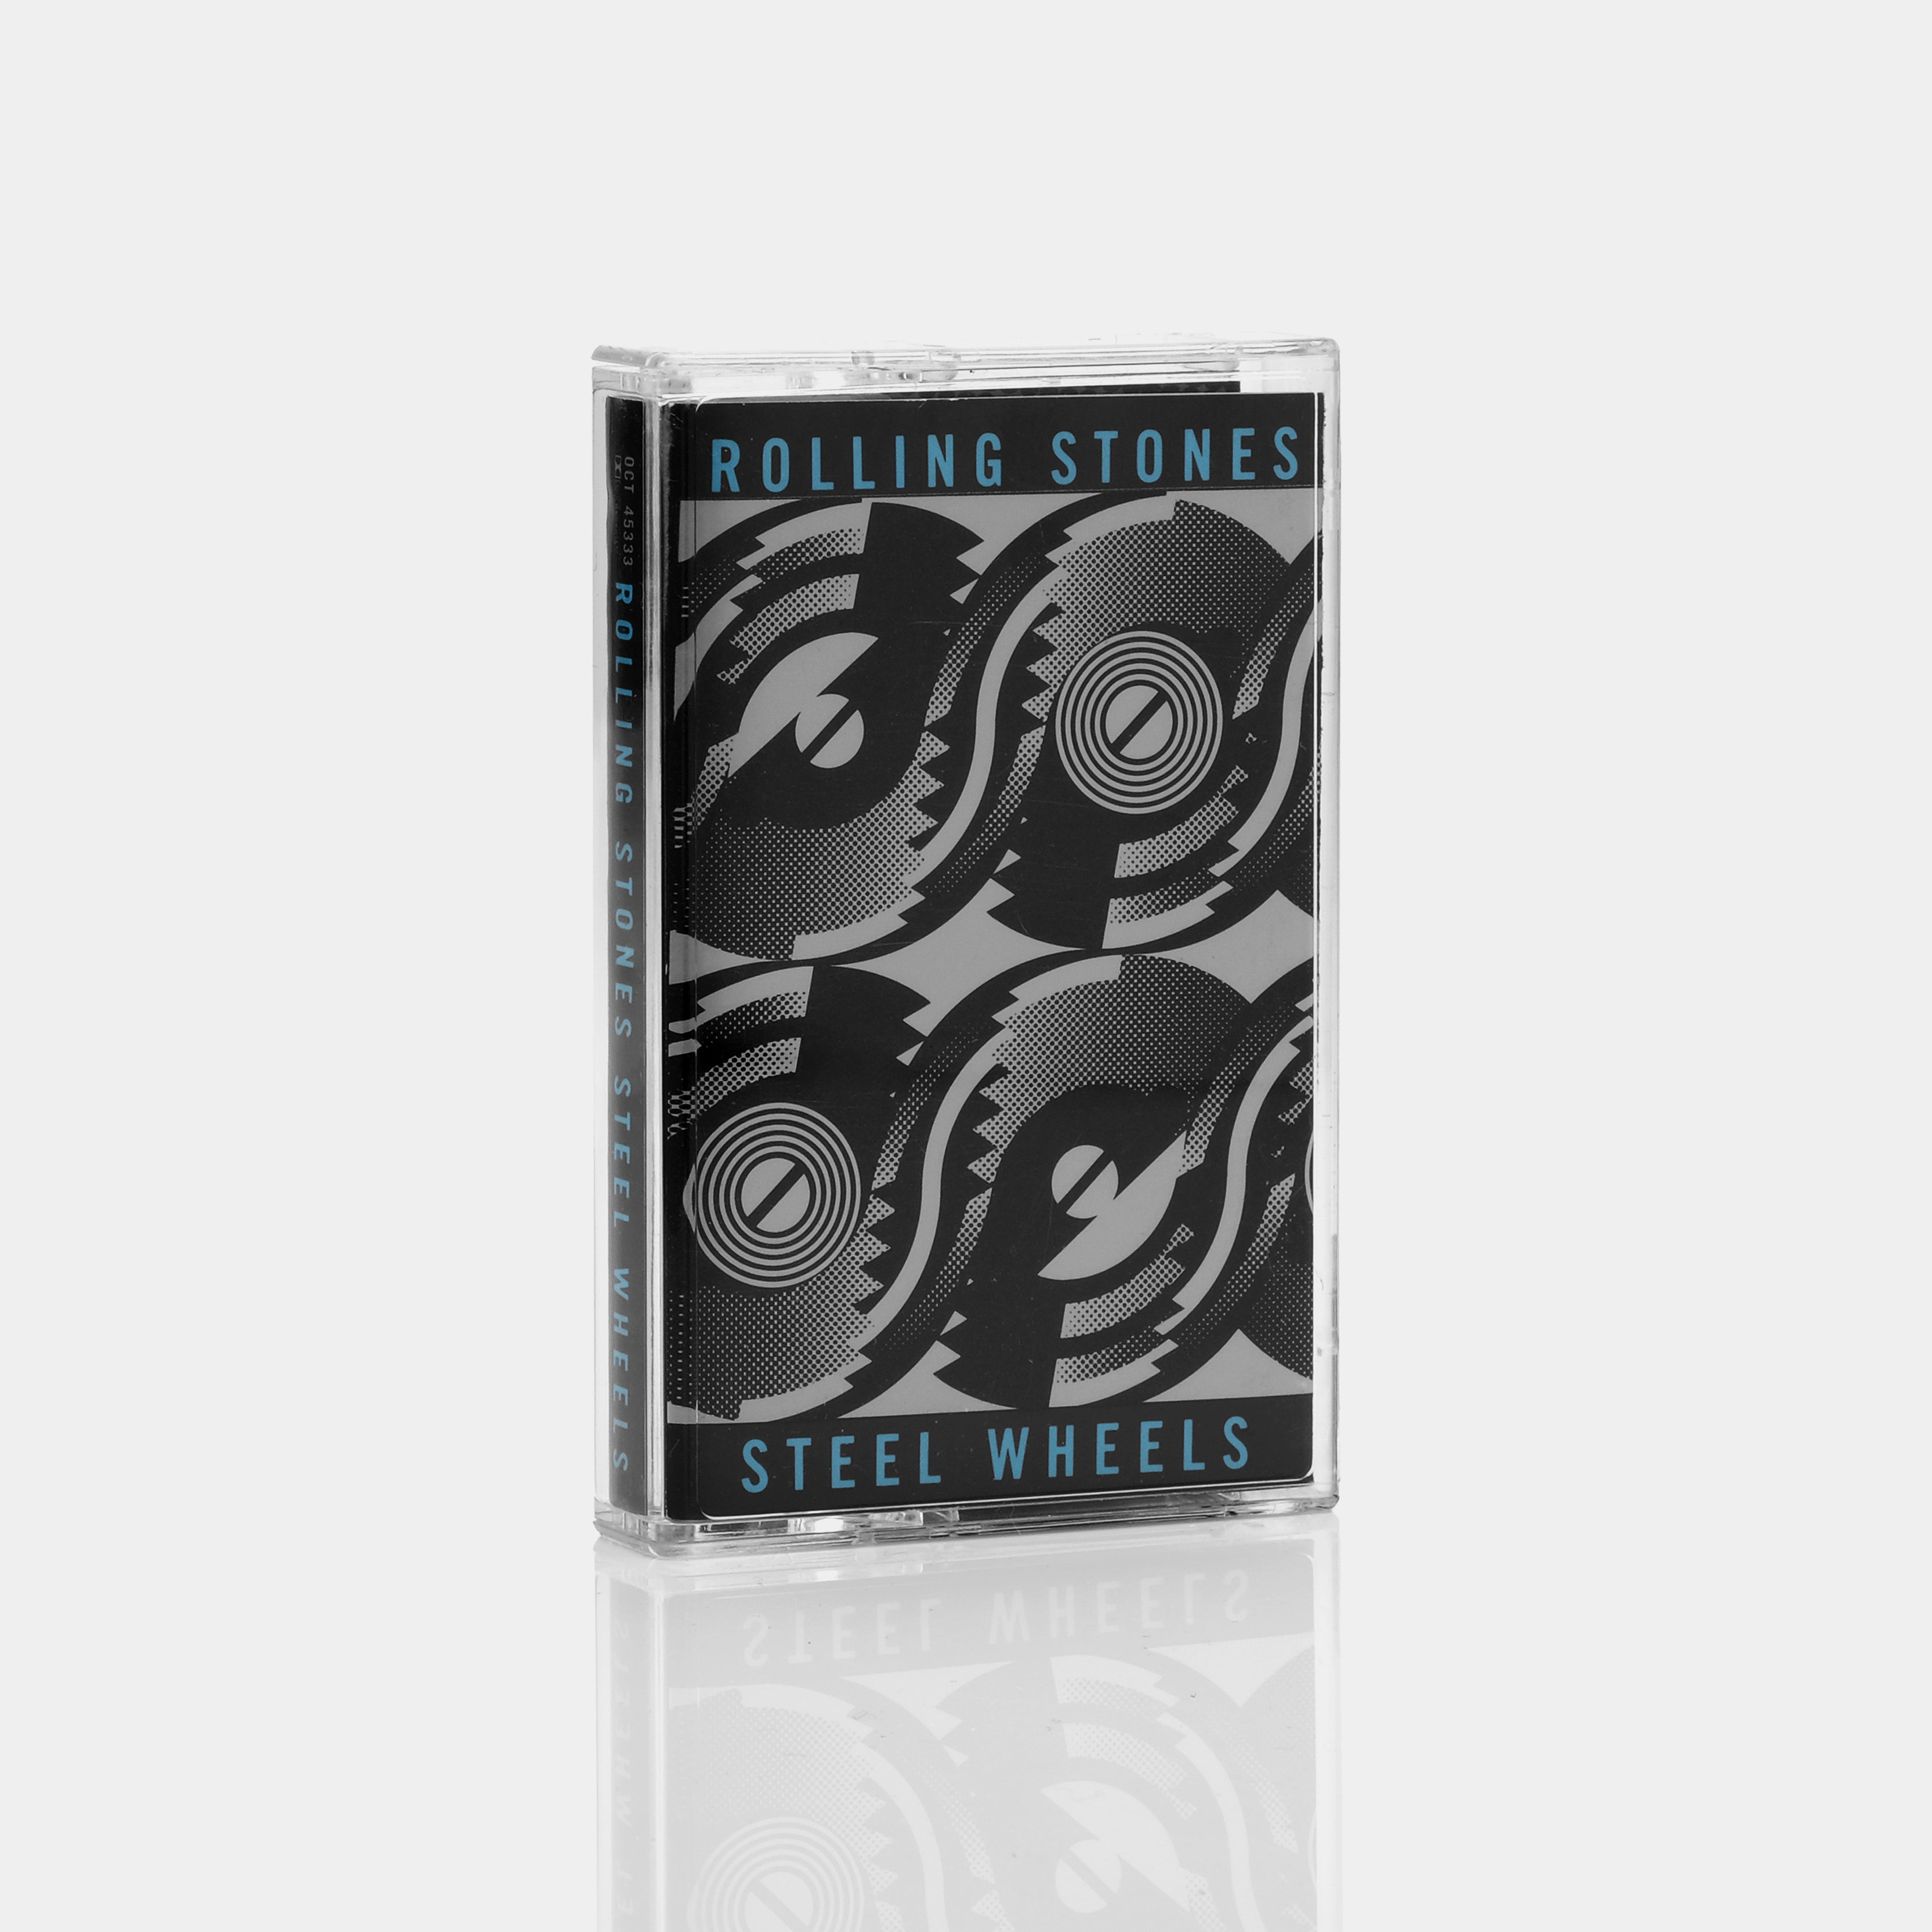 The Rolling Stones - Steel Wheels Cassette Tape